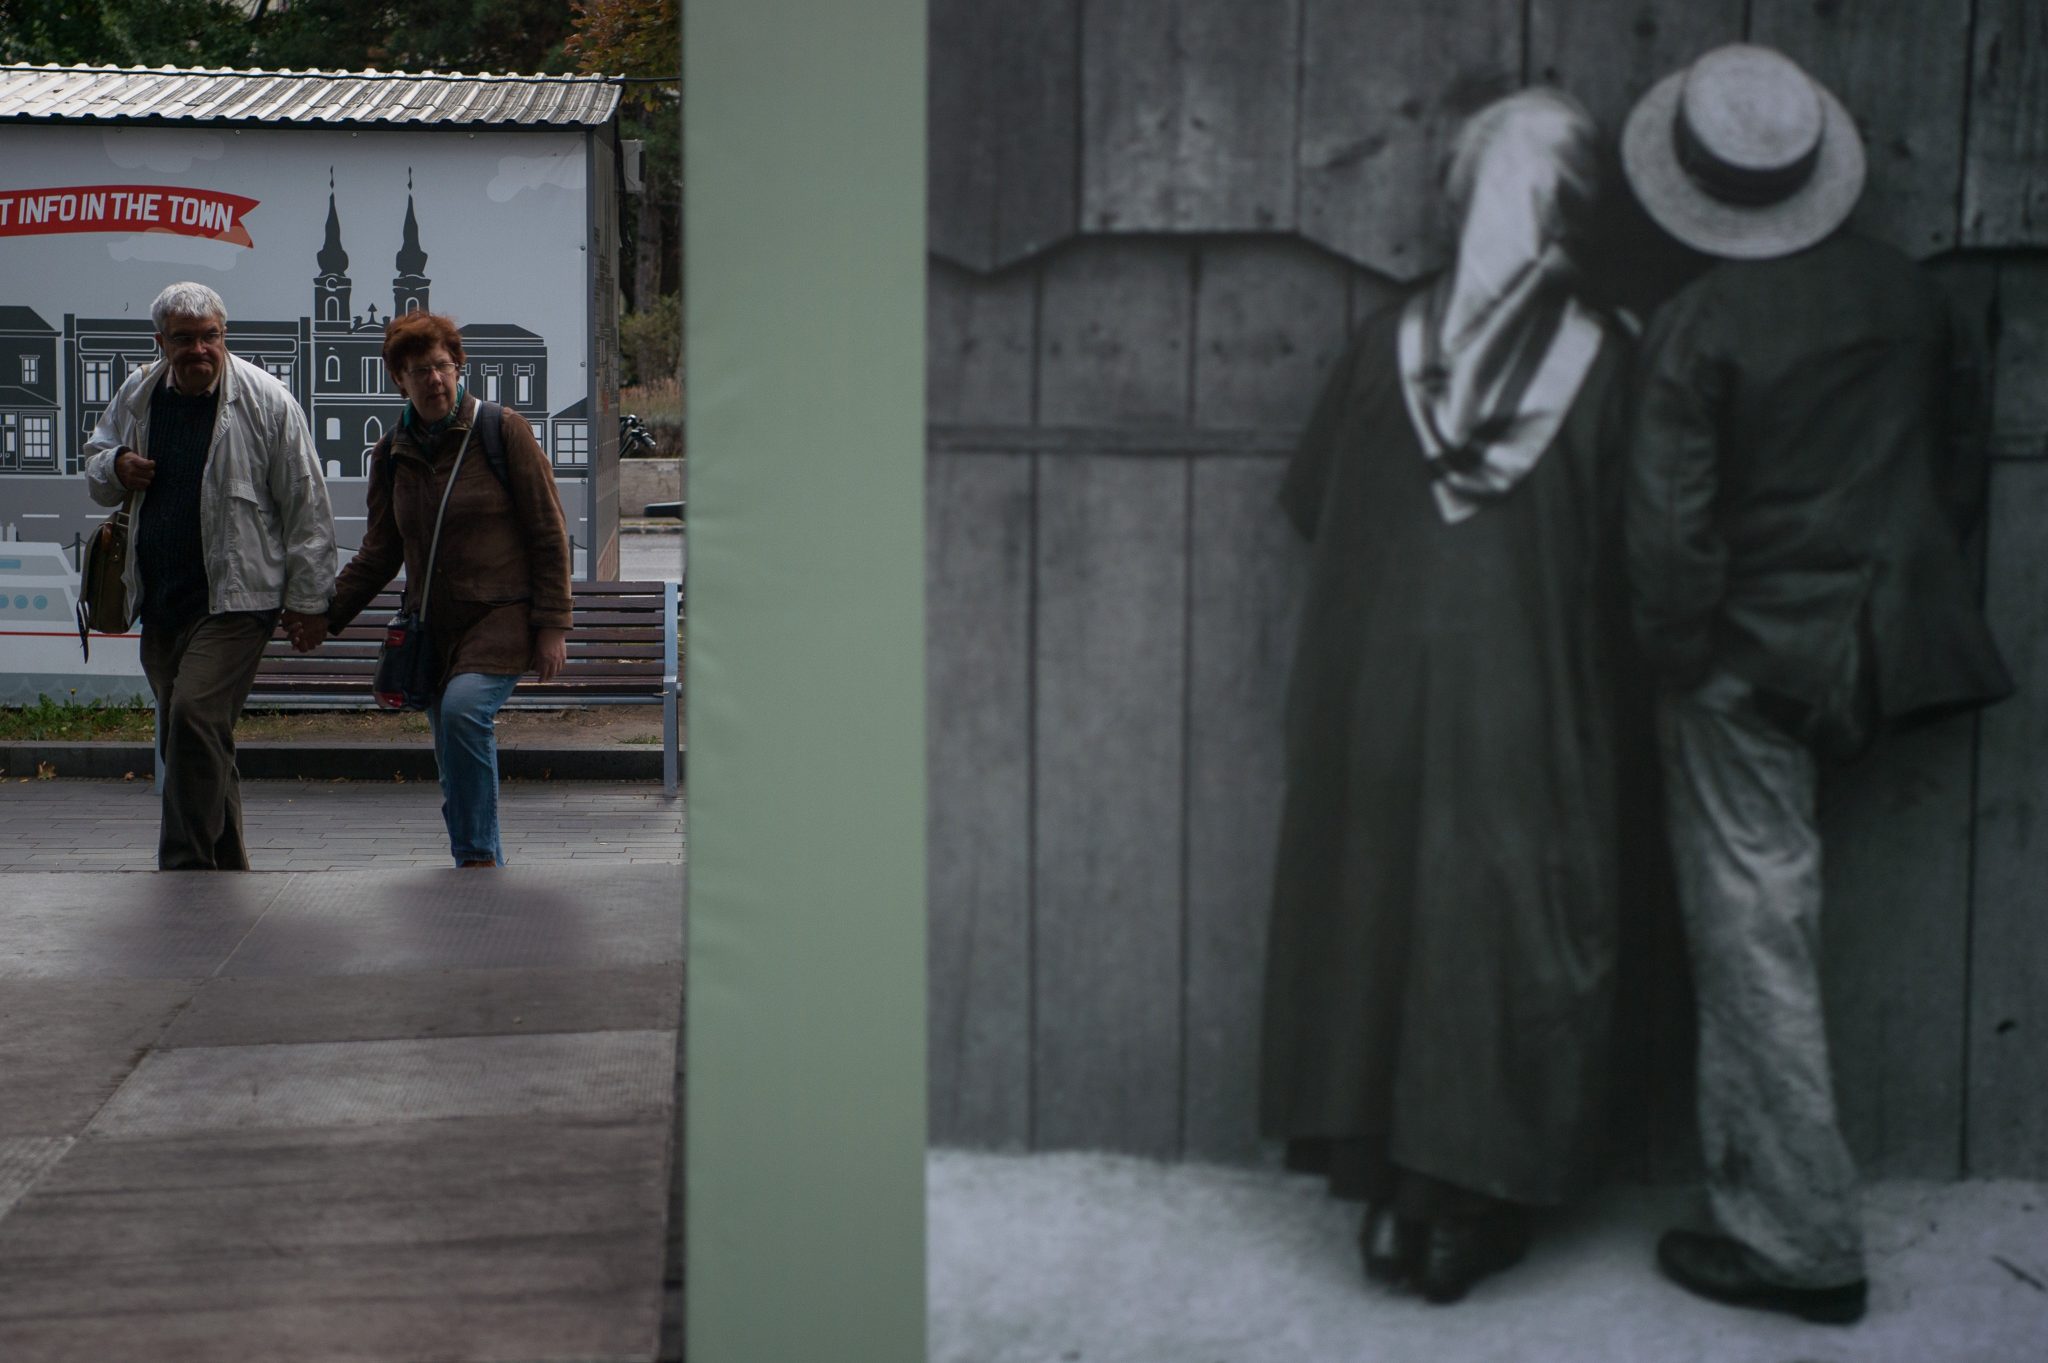 André Kertész's Unpublished Photographs Arrive in National Museum